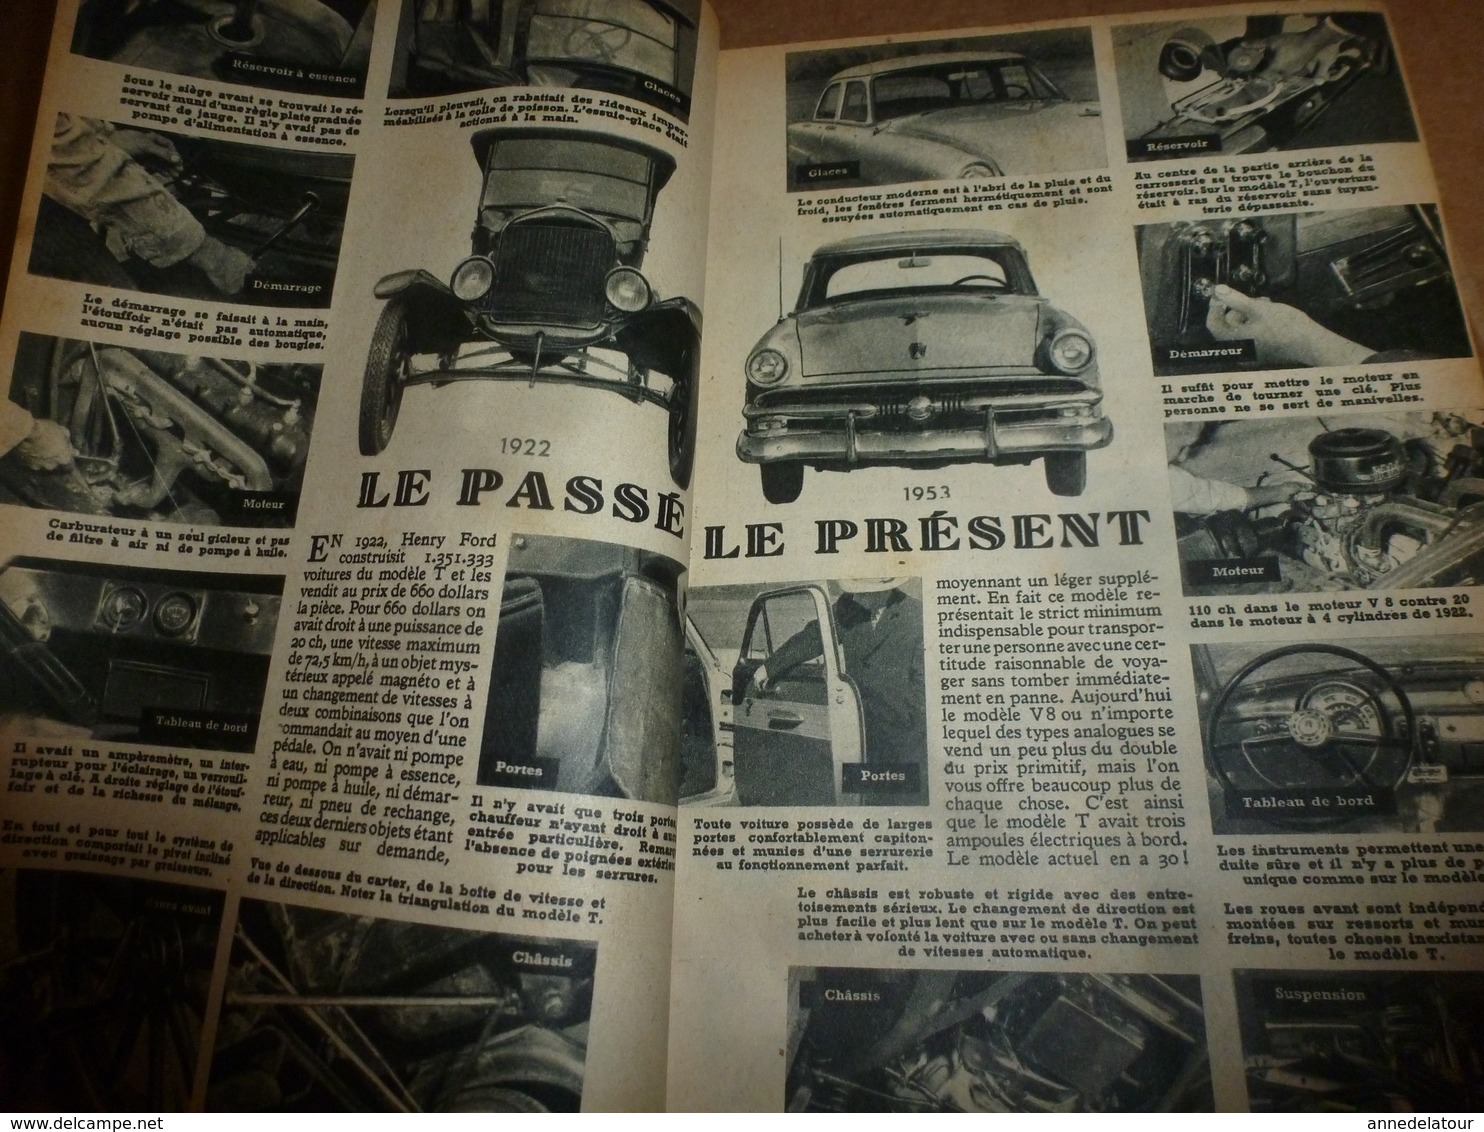 1953 MÉCANIQUE POPULAIRE: Chasse aux rayons cosmiques;Les motos américaines;Fabriquer une voile;Recherche de perles;etc